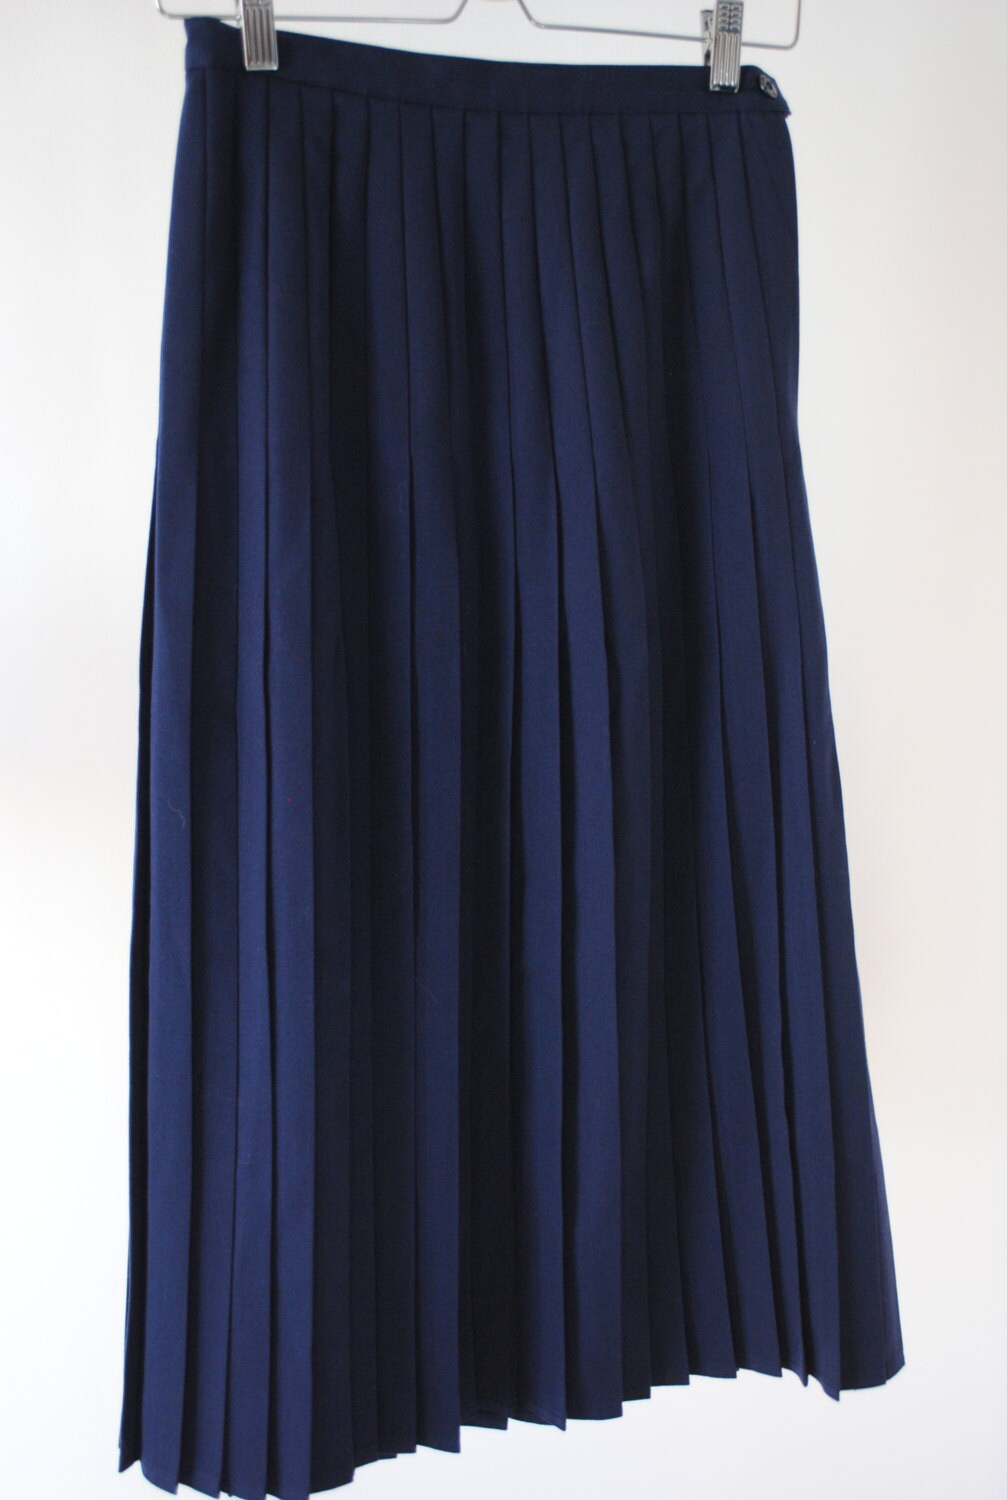 SALE Vintage Navy Mid-Length Pleated Skirt